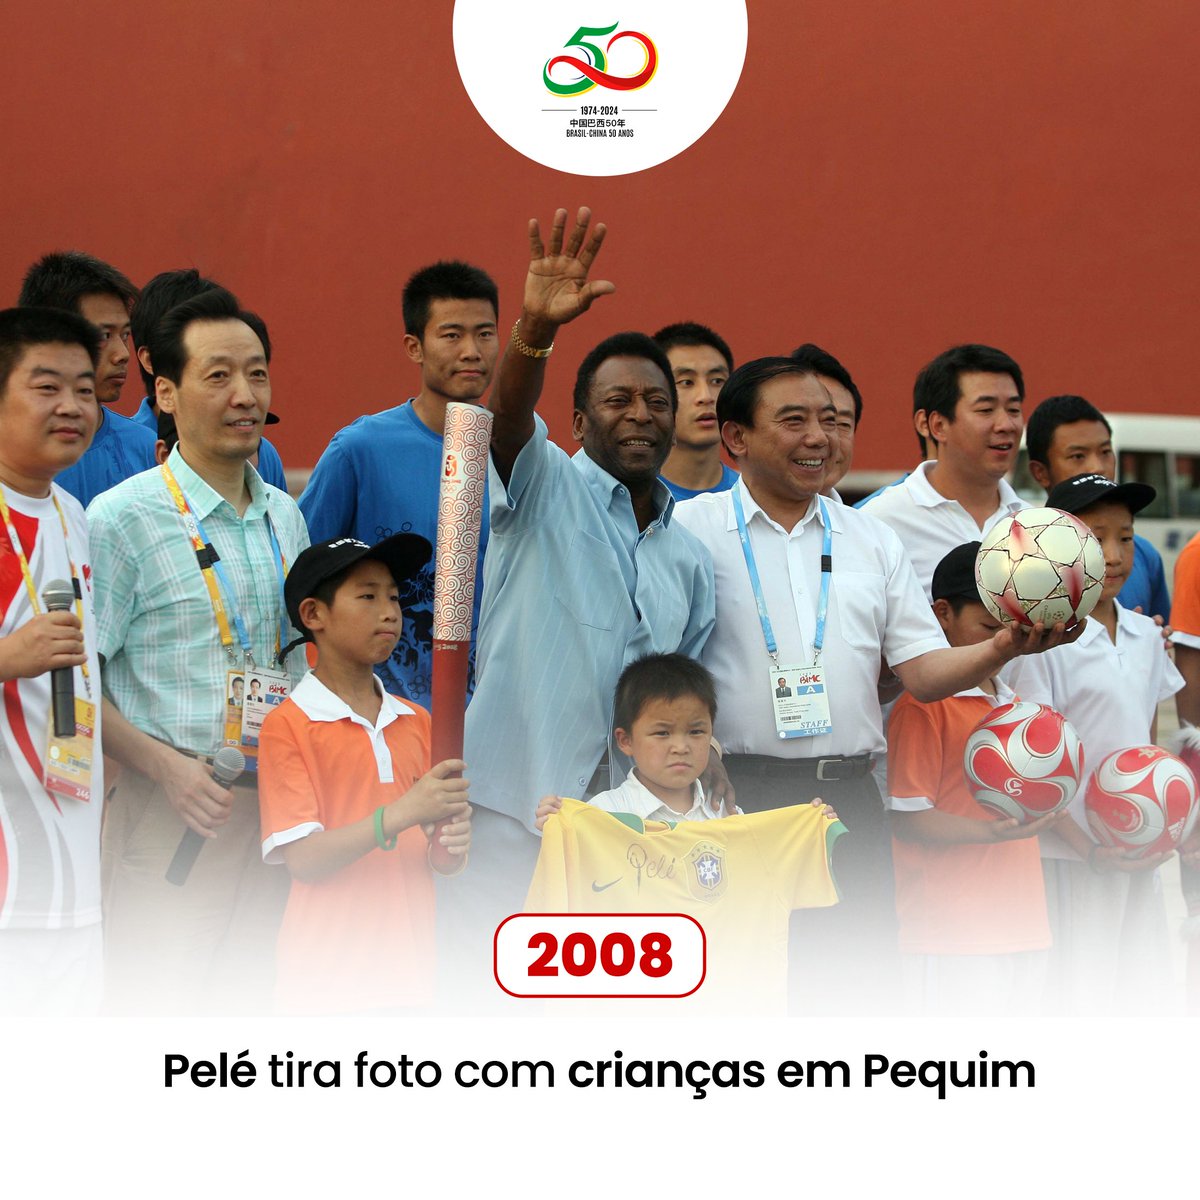 #História Sino-Brasileira ❤ | Em 2008, a magia do futebol ganhou uma nova dimensão na China com a visita de Pelé. Um ícone global, uma lenda do esporte, inspirando gerações e unindo culturas através da bola ⚽🌏? #BrasilChina50Anos